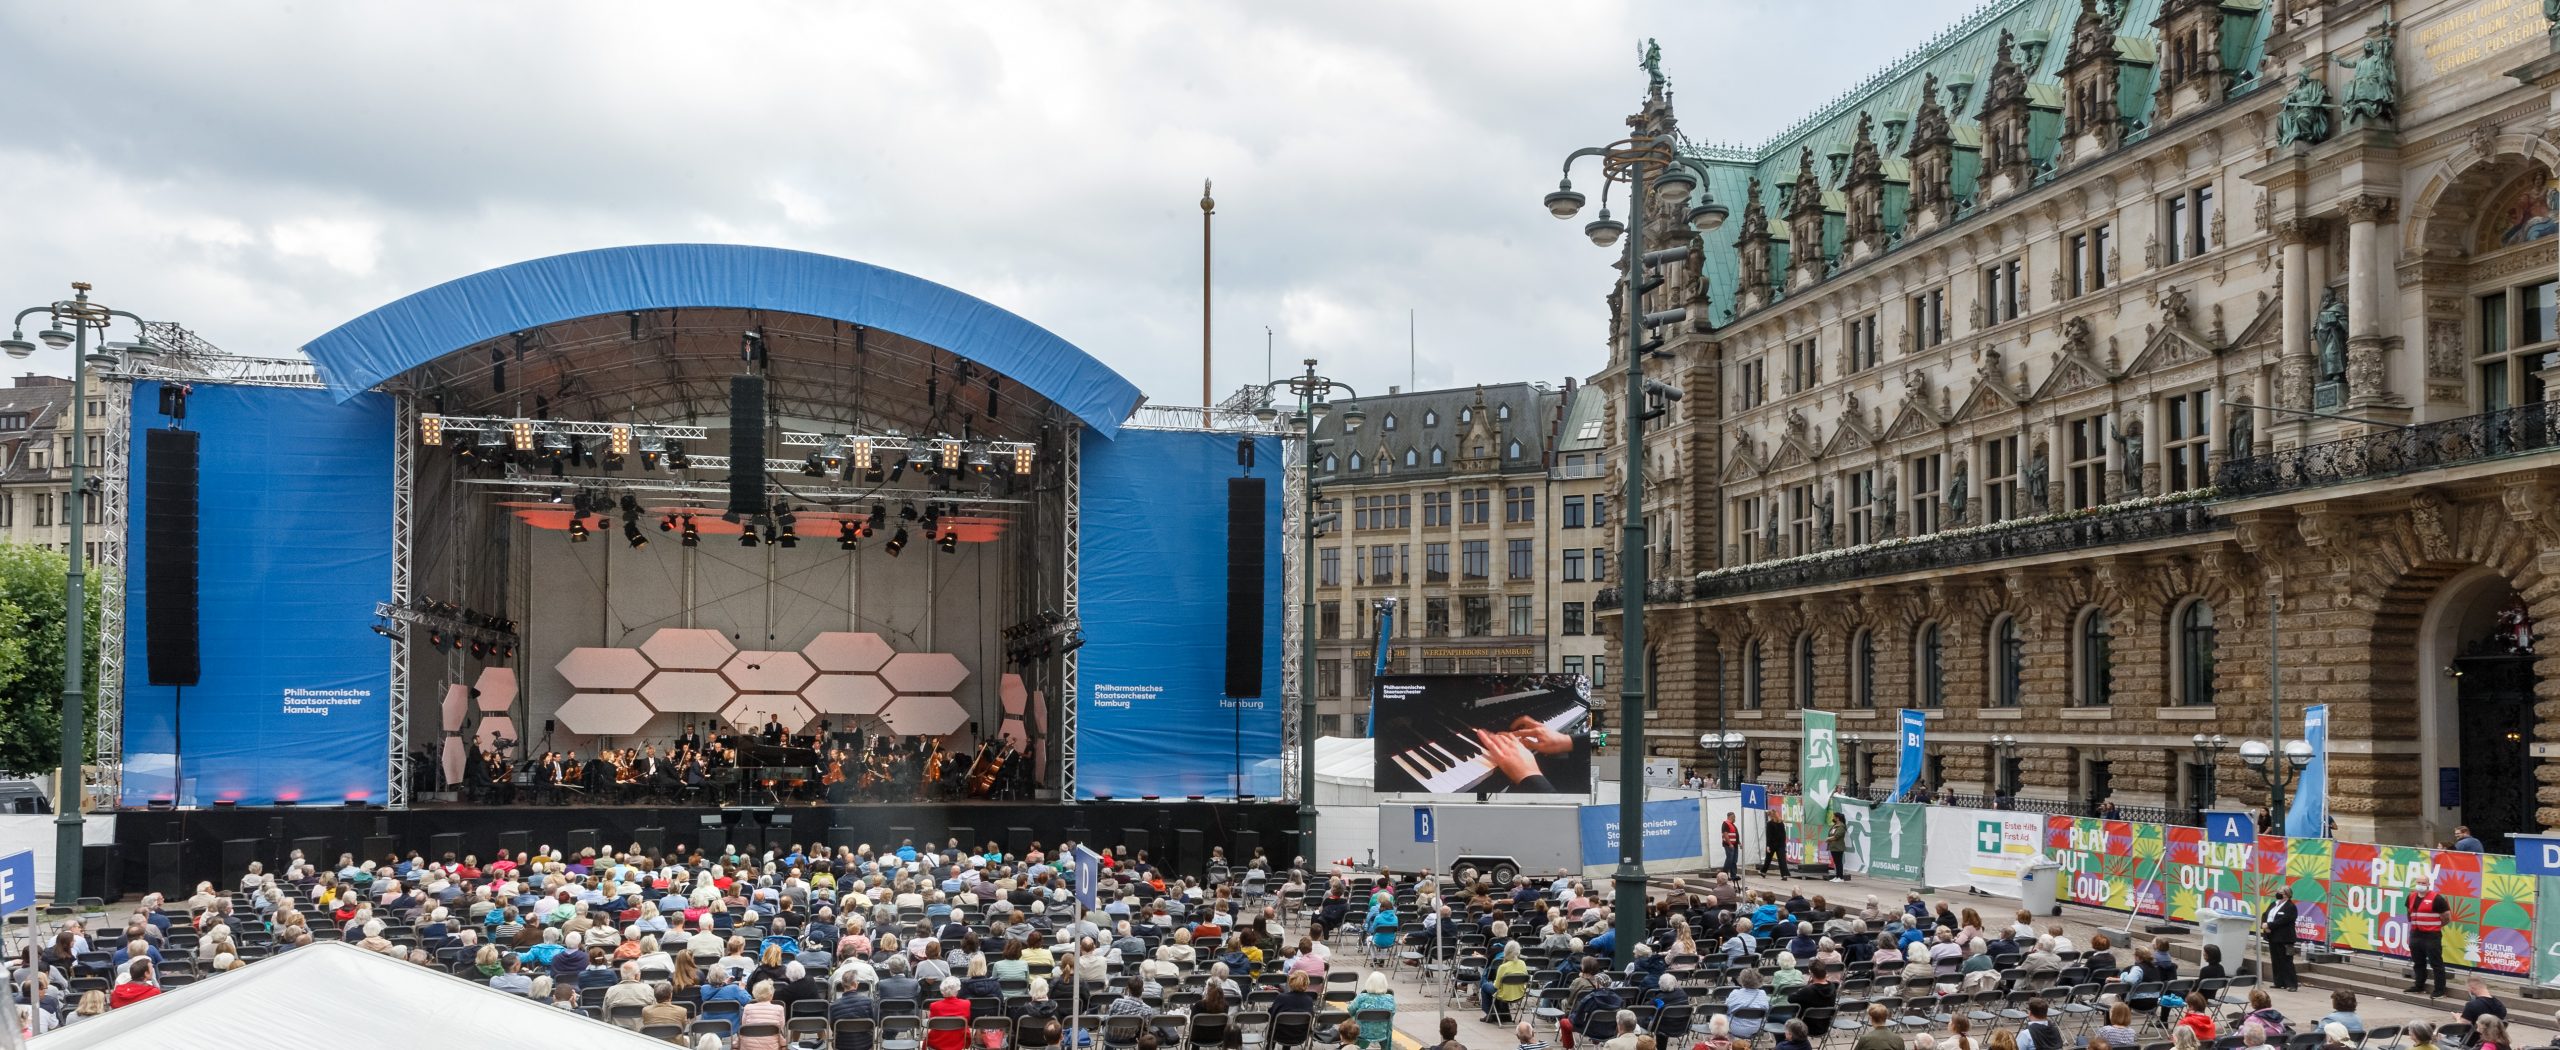 Das Philharmonische Staatsorchester Hamburg eröffnet mit Open-Air-Konzerten am 14. und 15. August auf dem Rathausmarkt seine neue Konzertsaison - und schließt gleichzeitig Hamburgs Kultursommer unter dem Motto „Play out loud“ ab.